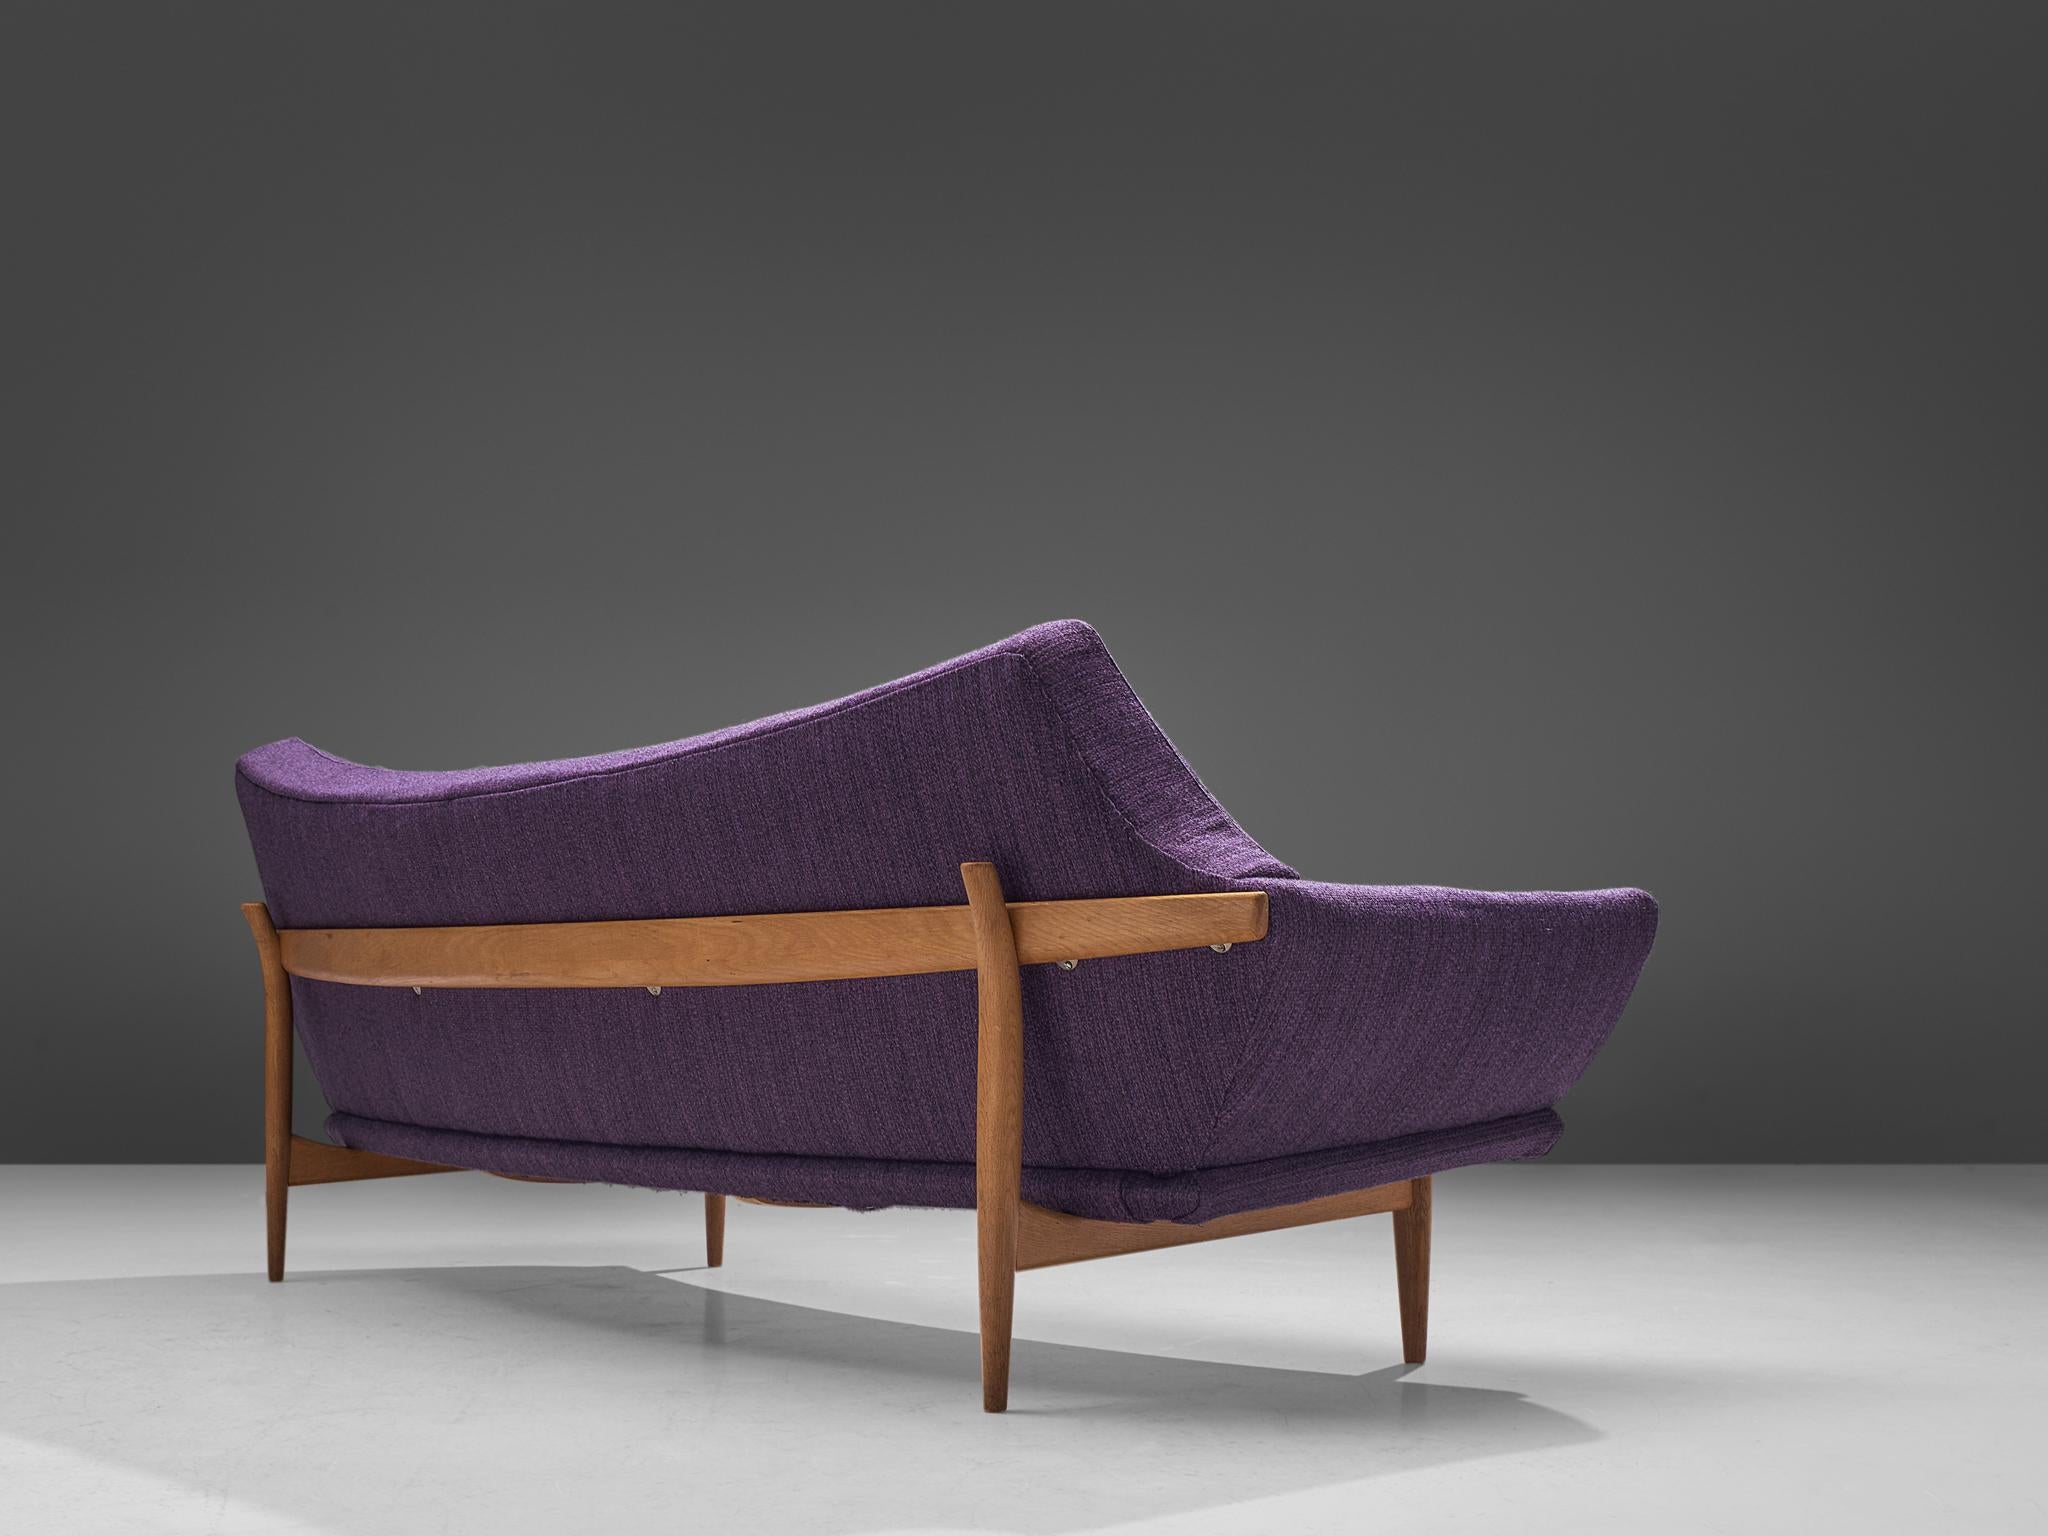 Johannes Andersen für Trensums Fatöljfabrik, Sofa, Stoff, Eiche, Schweden, 1960er Jahre

Schwedisches Dreisitzsofa, entworfen von Johannes Andersen in den 1960er Jahren. Das geschwungene Sofa zeichnet sich durch ein auffälliges Design aus, das fast